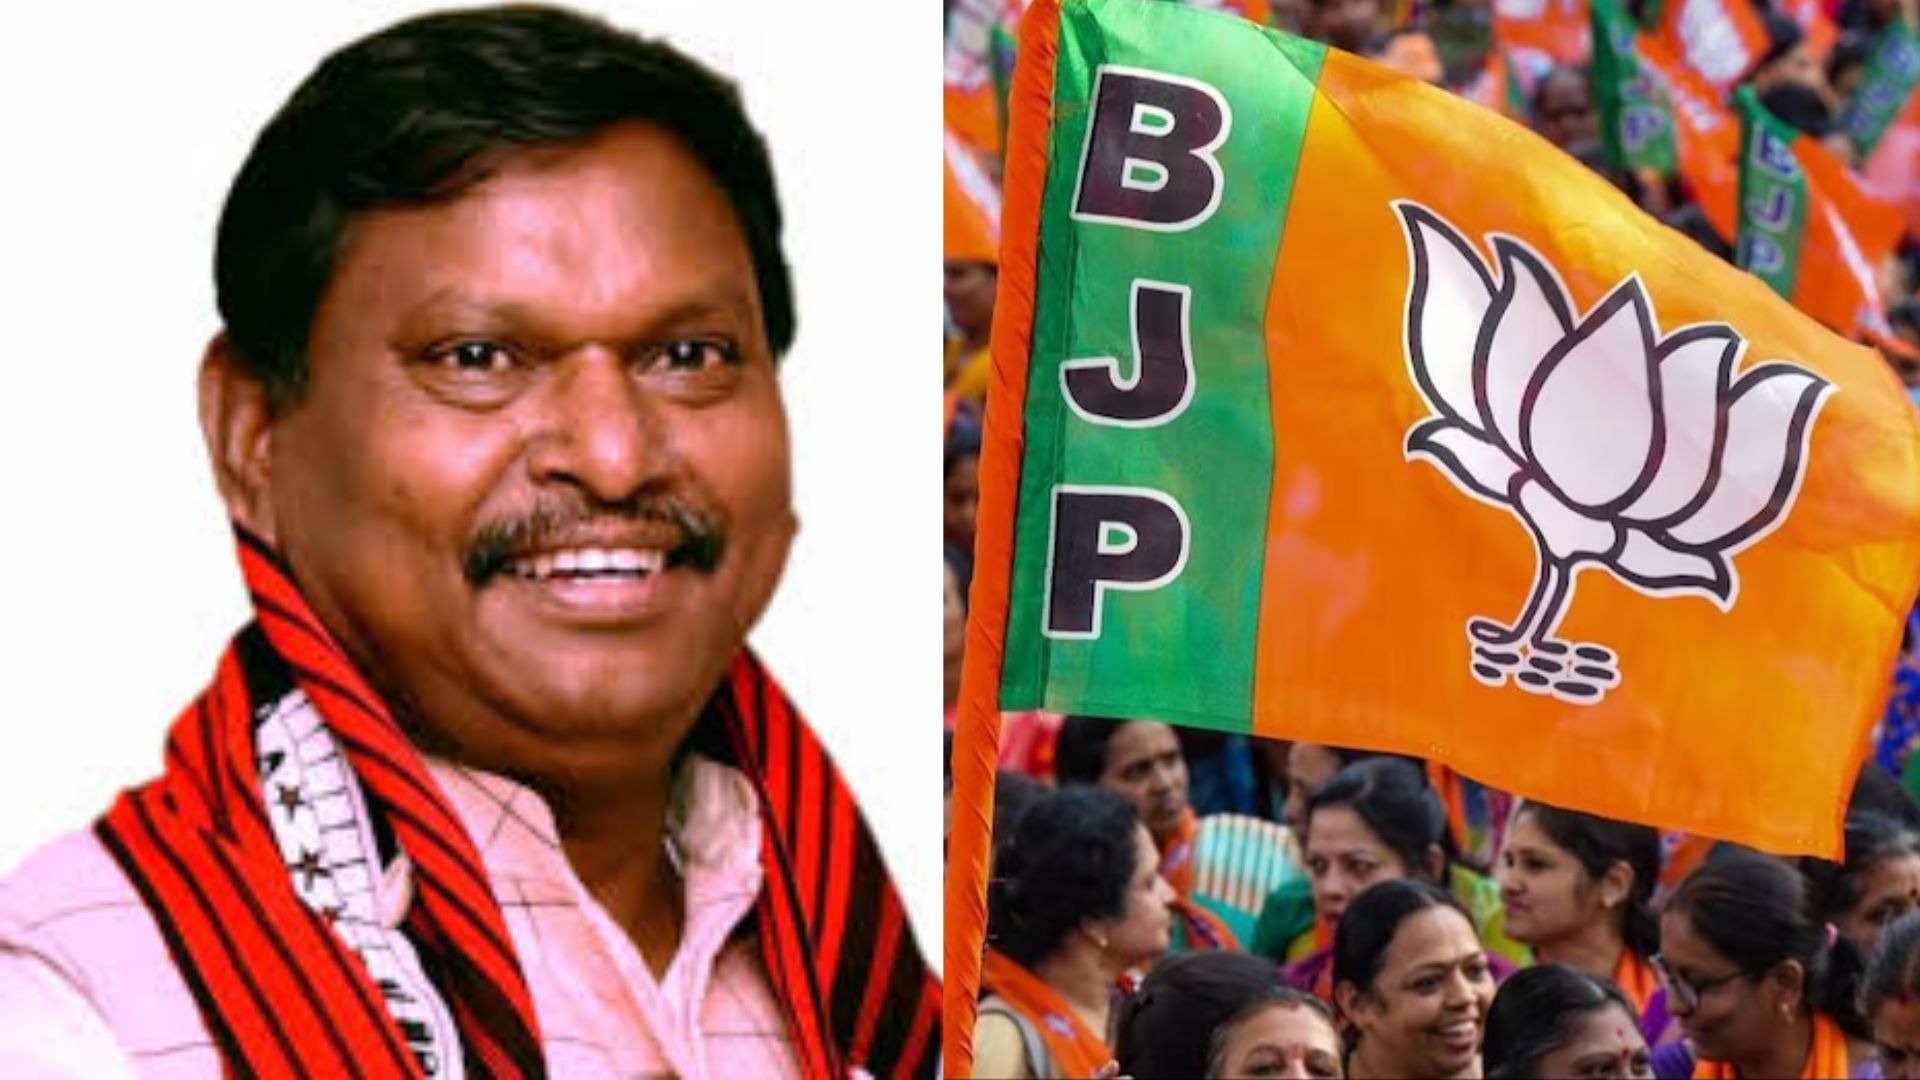 झारखंड के 14 में से 11 संसदीय सीटों के लिए भाजपा के उम्मीदवारों के नामों की घोषणा, फिर खूंटी से लड़ेंगे अर्जुन मुंडा